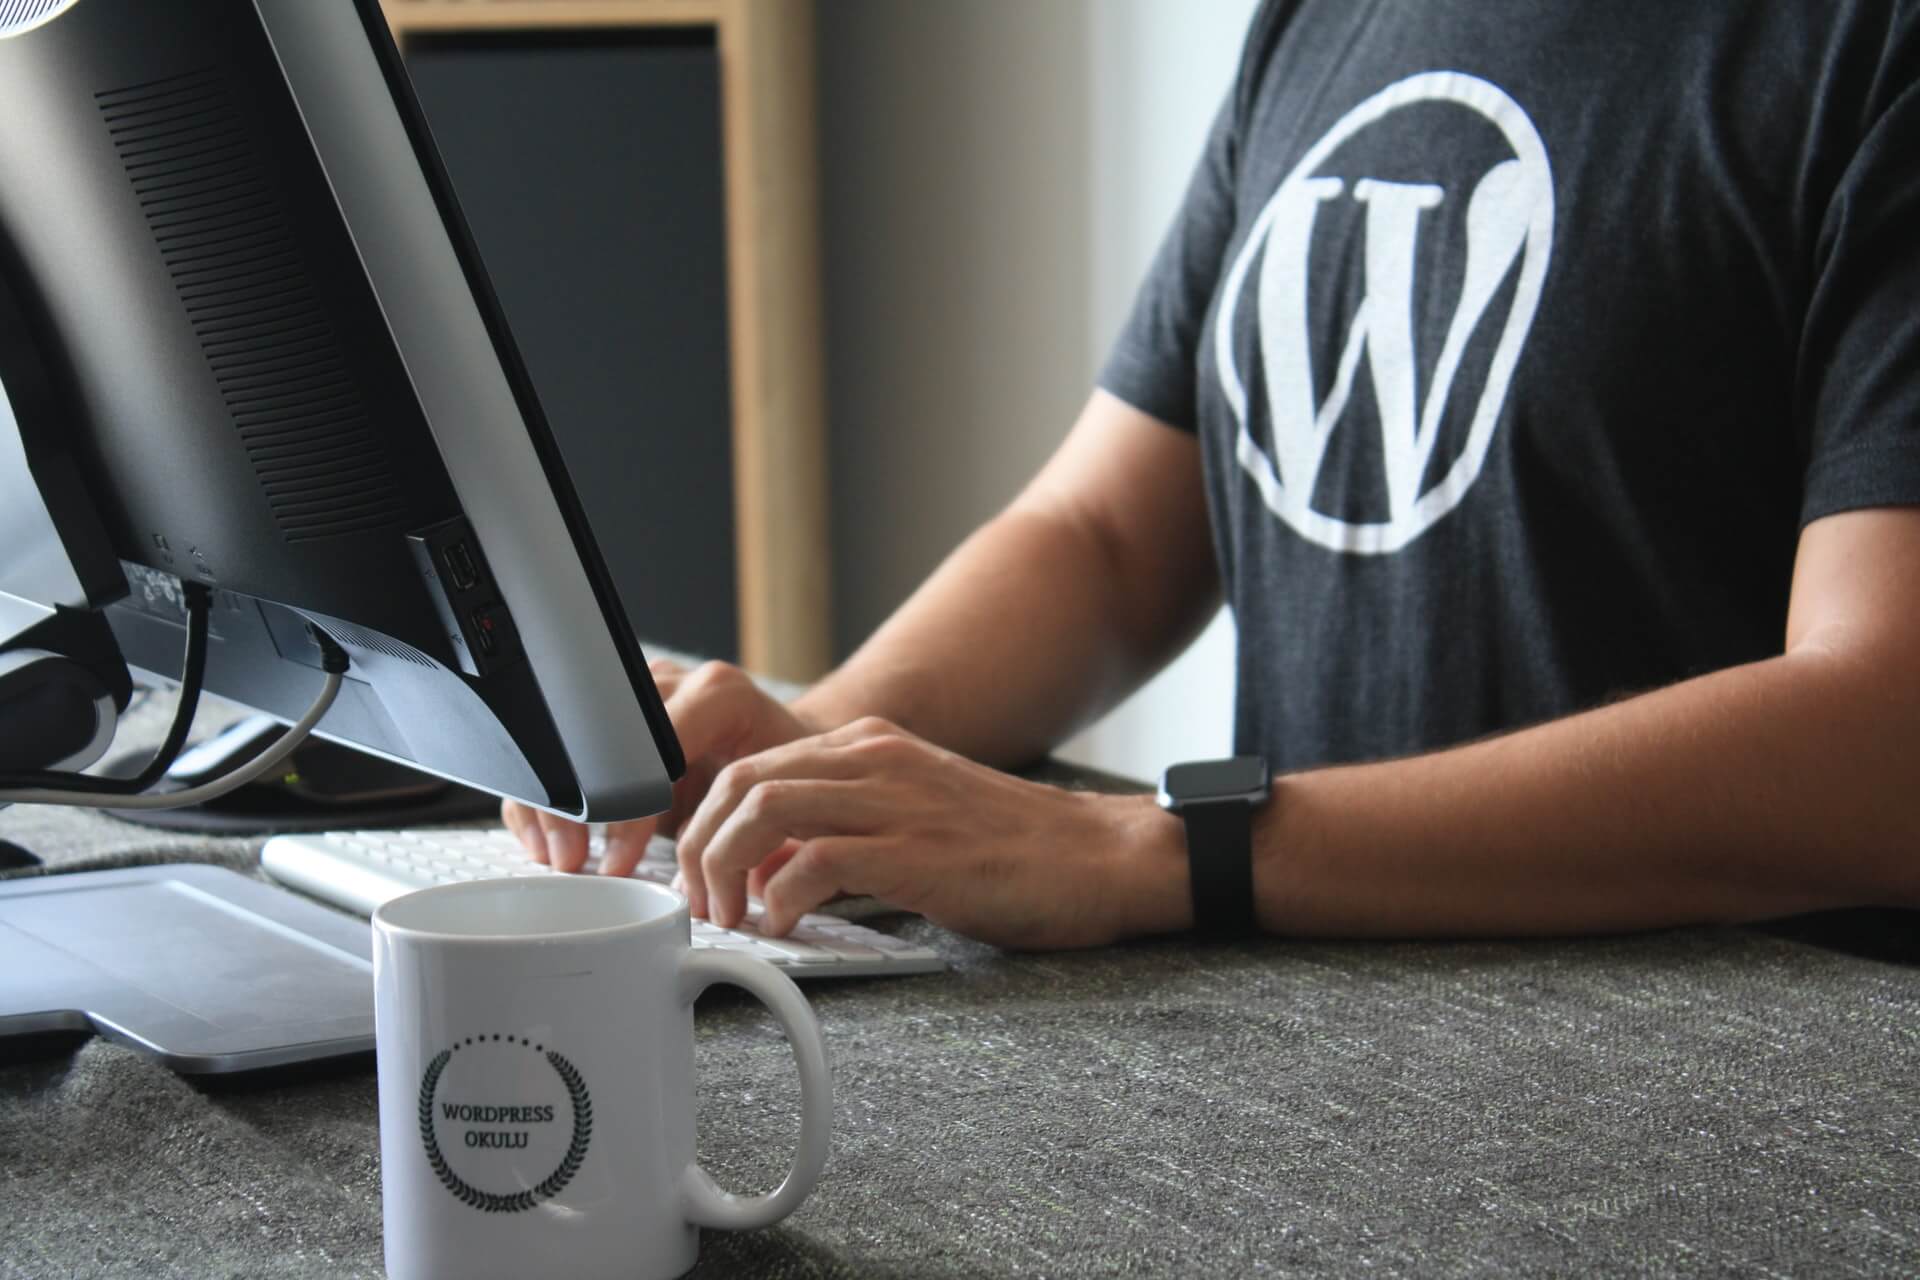 Los mejores temas de wordpress para comenzar tu blog este 2022